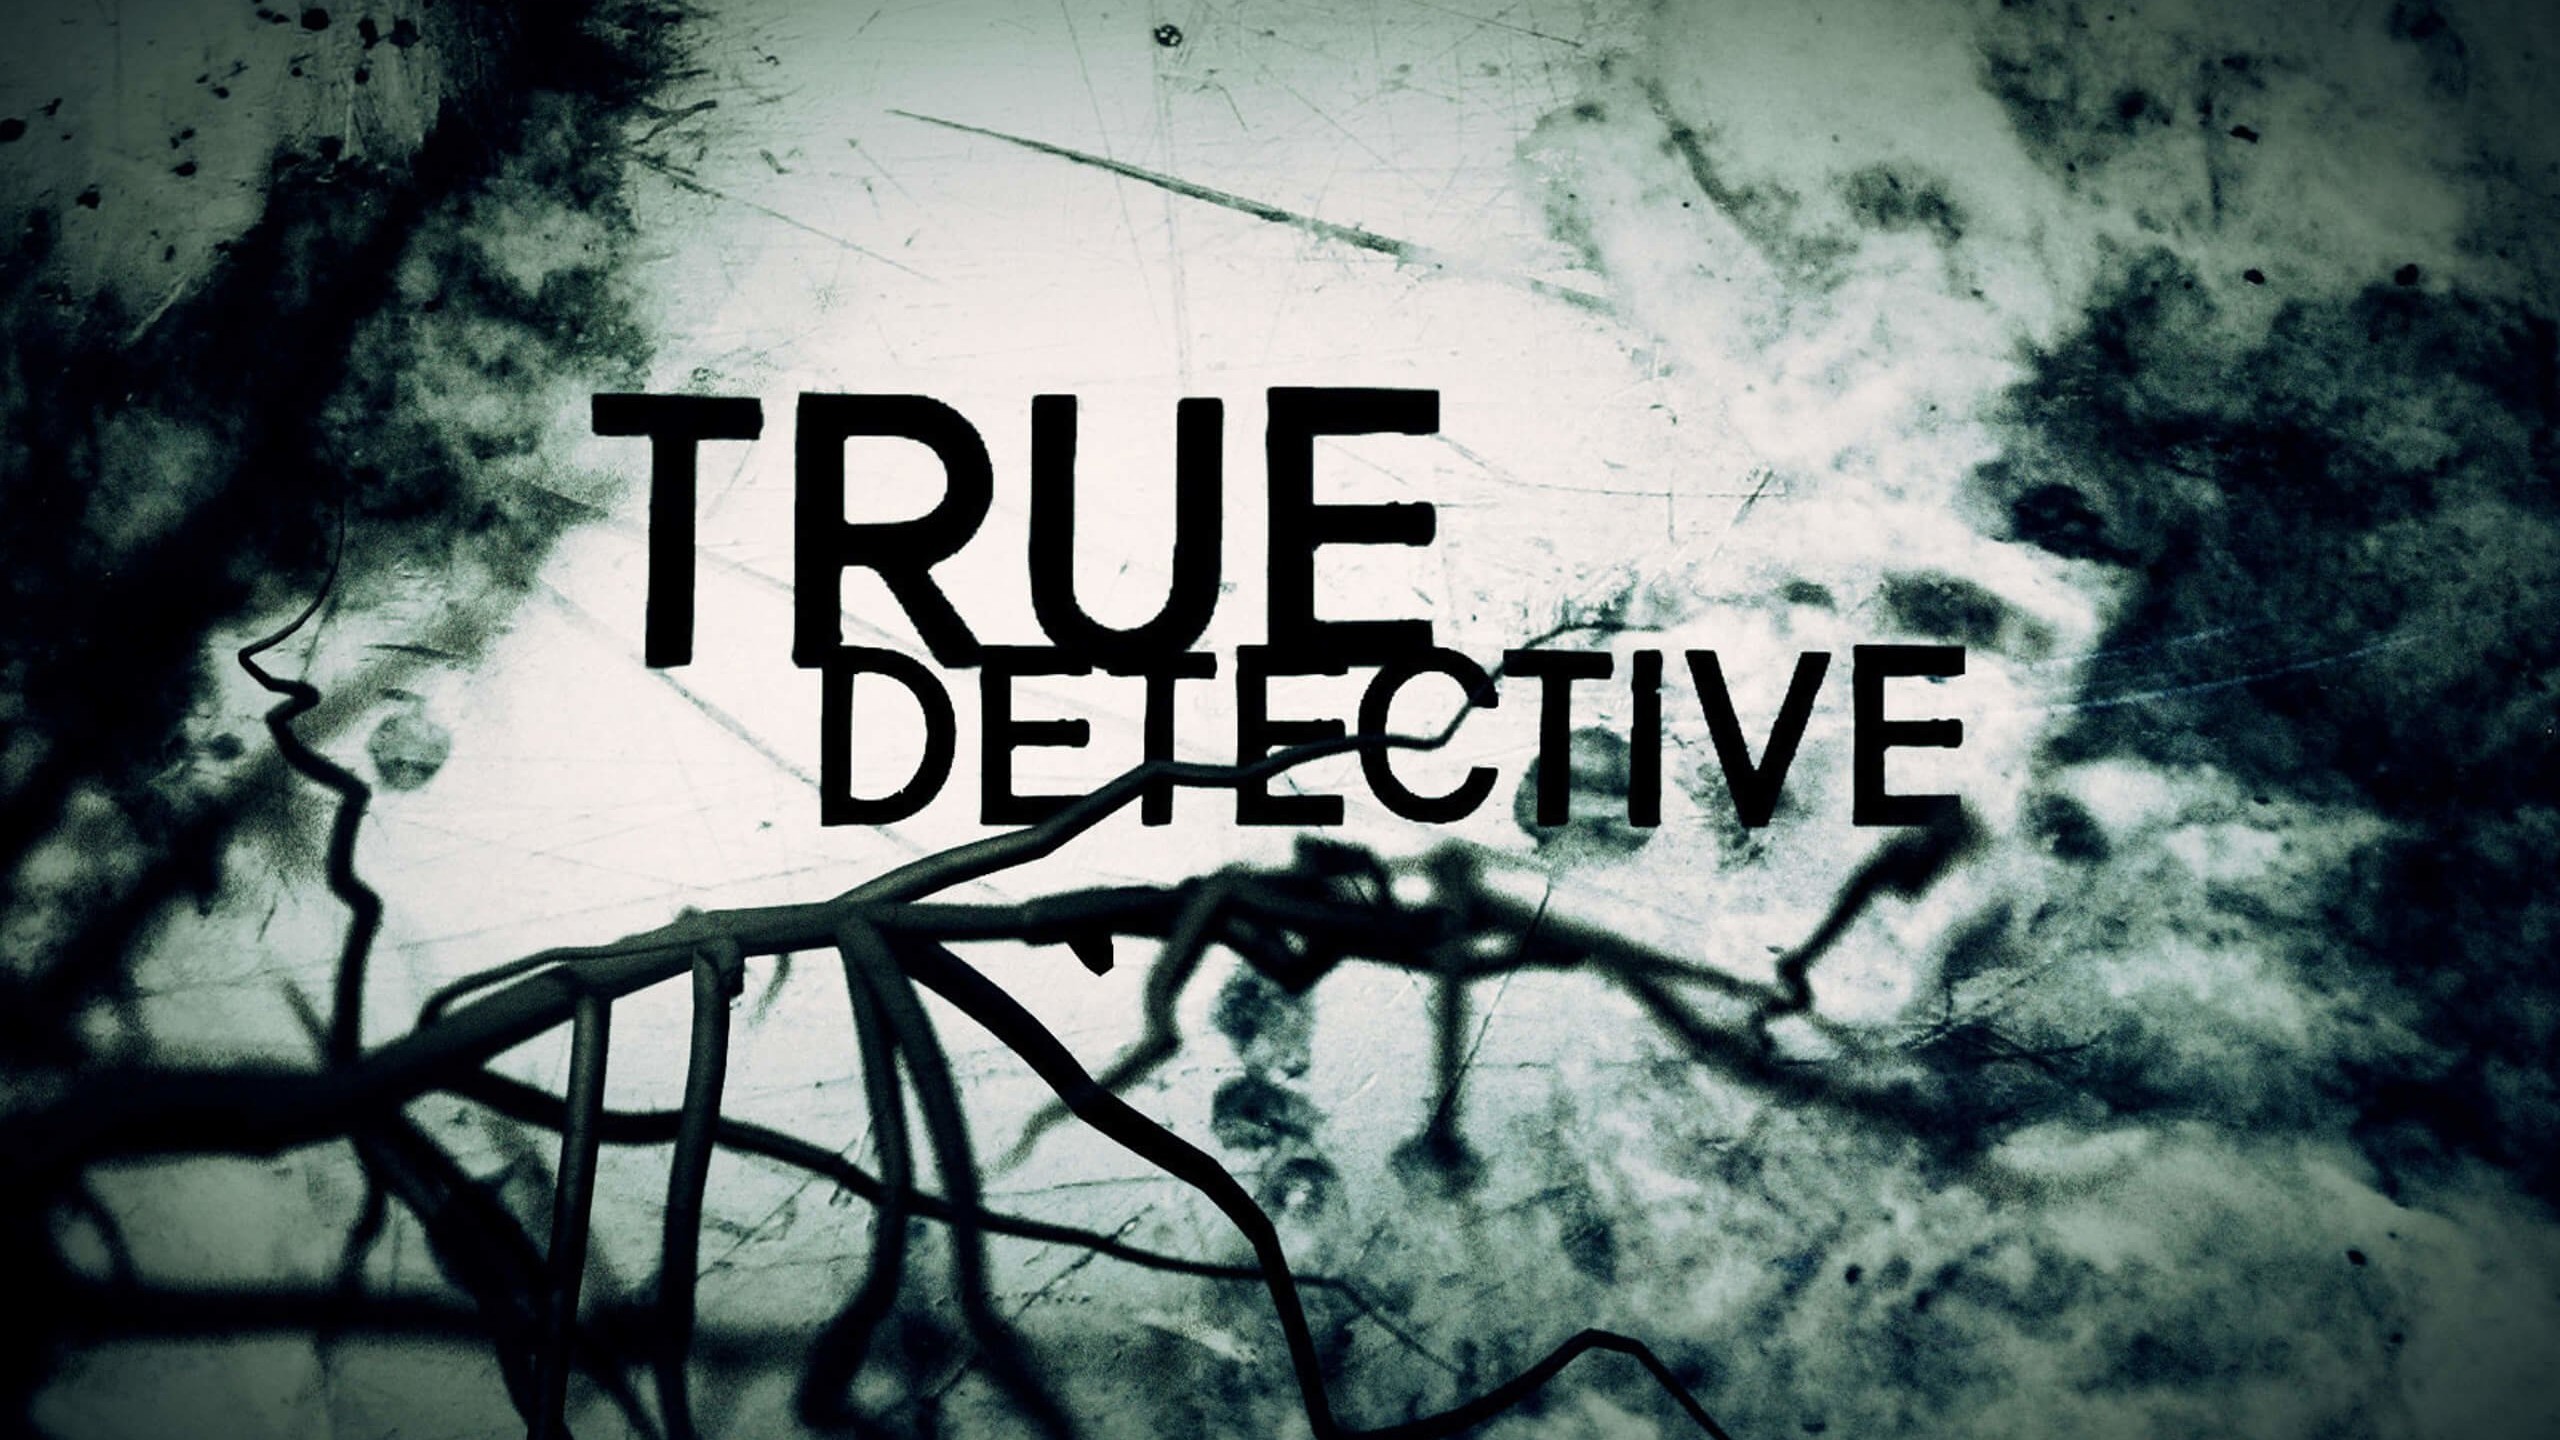 True Detective Wallpaper for Desktop 2560x1440